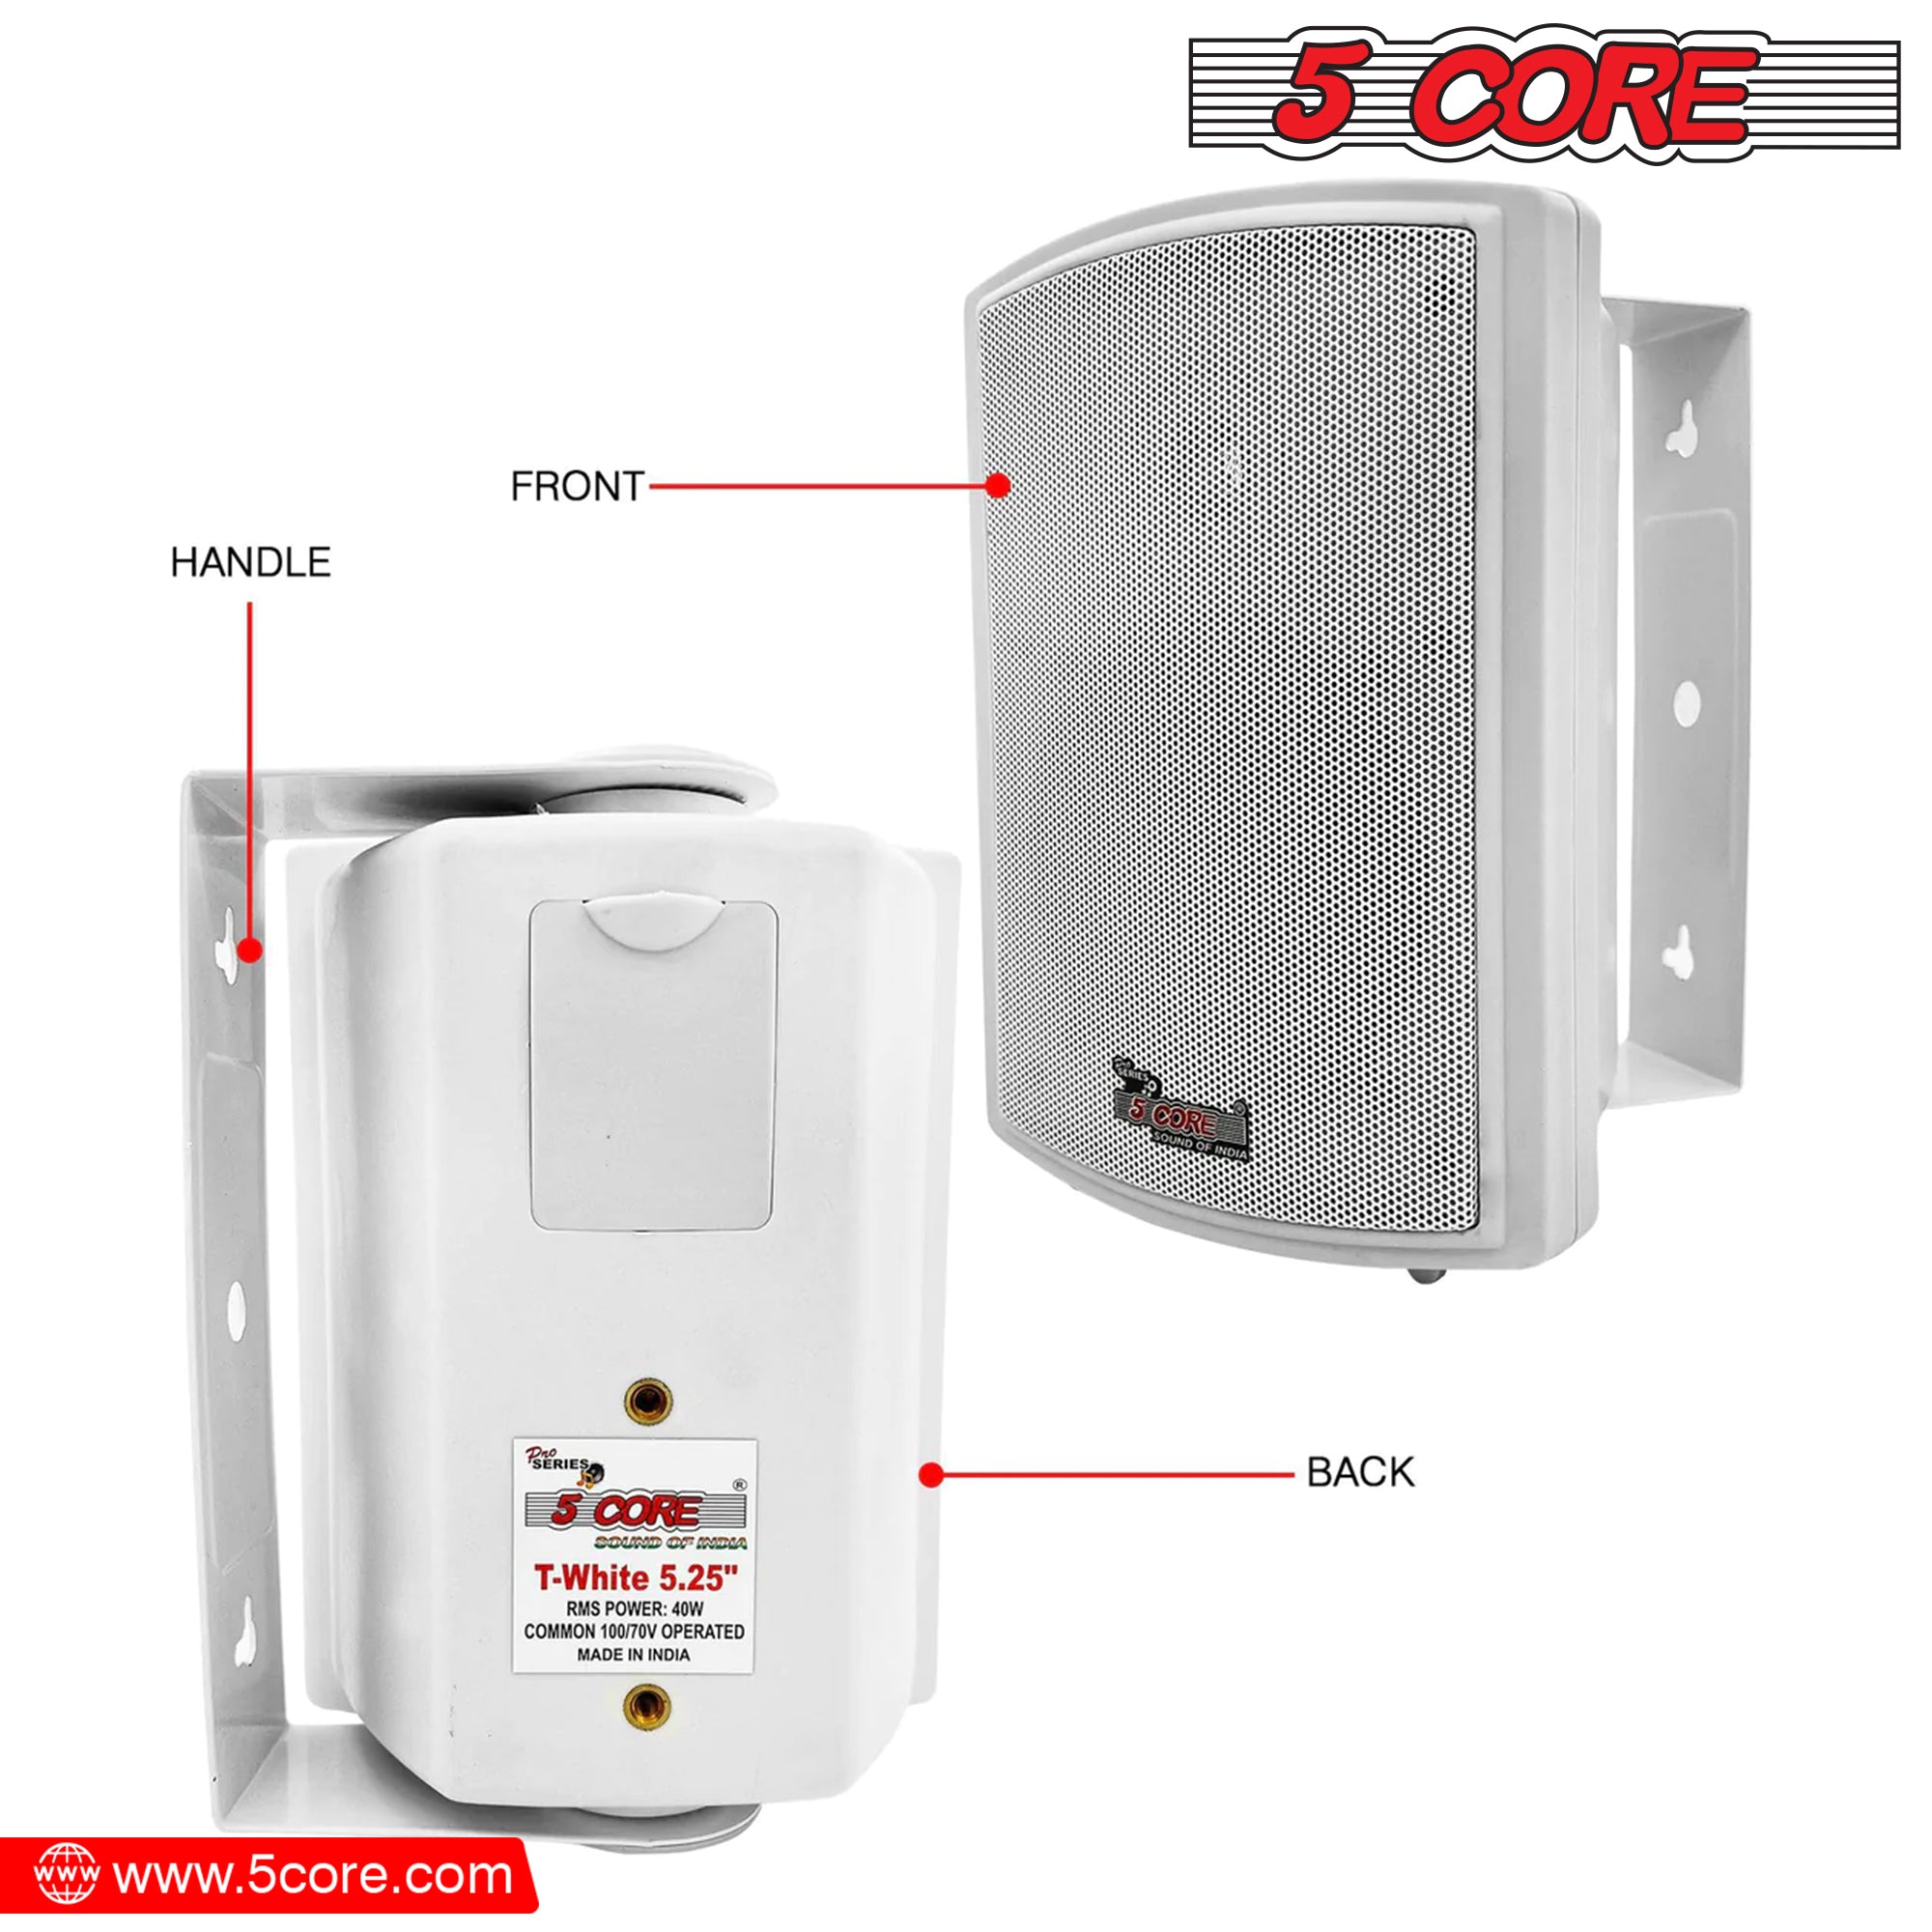 5 Core Wall Speaker System 2Pack 2 Way 400W PMPO • Heavy Duty Waterproof 5.25" Wall Mount Speakers.